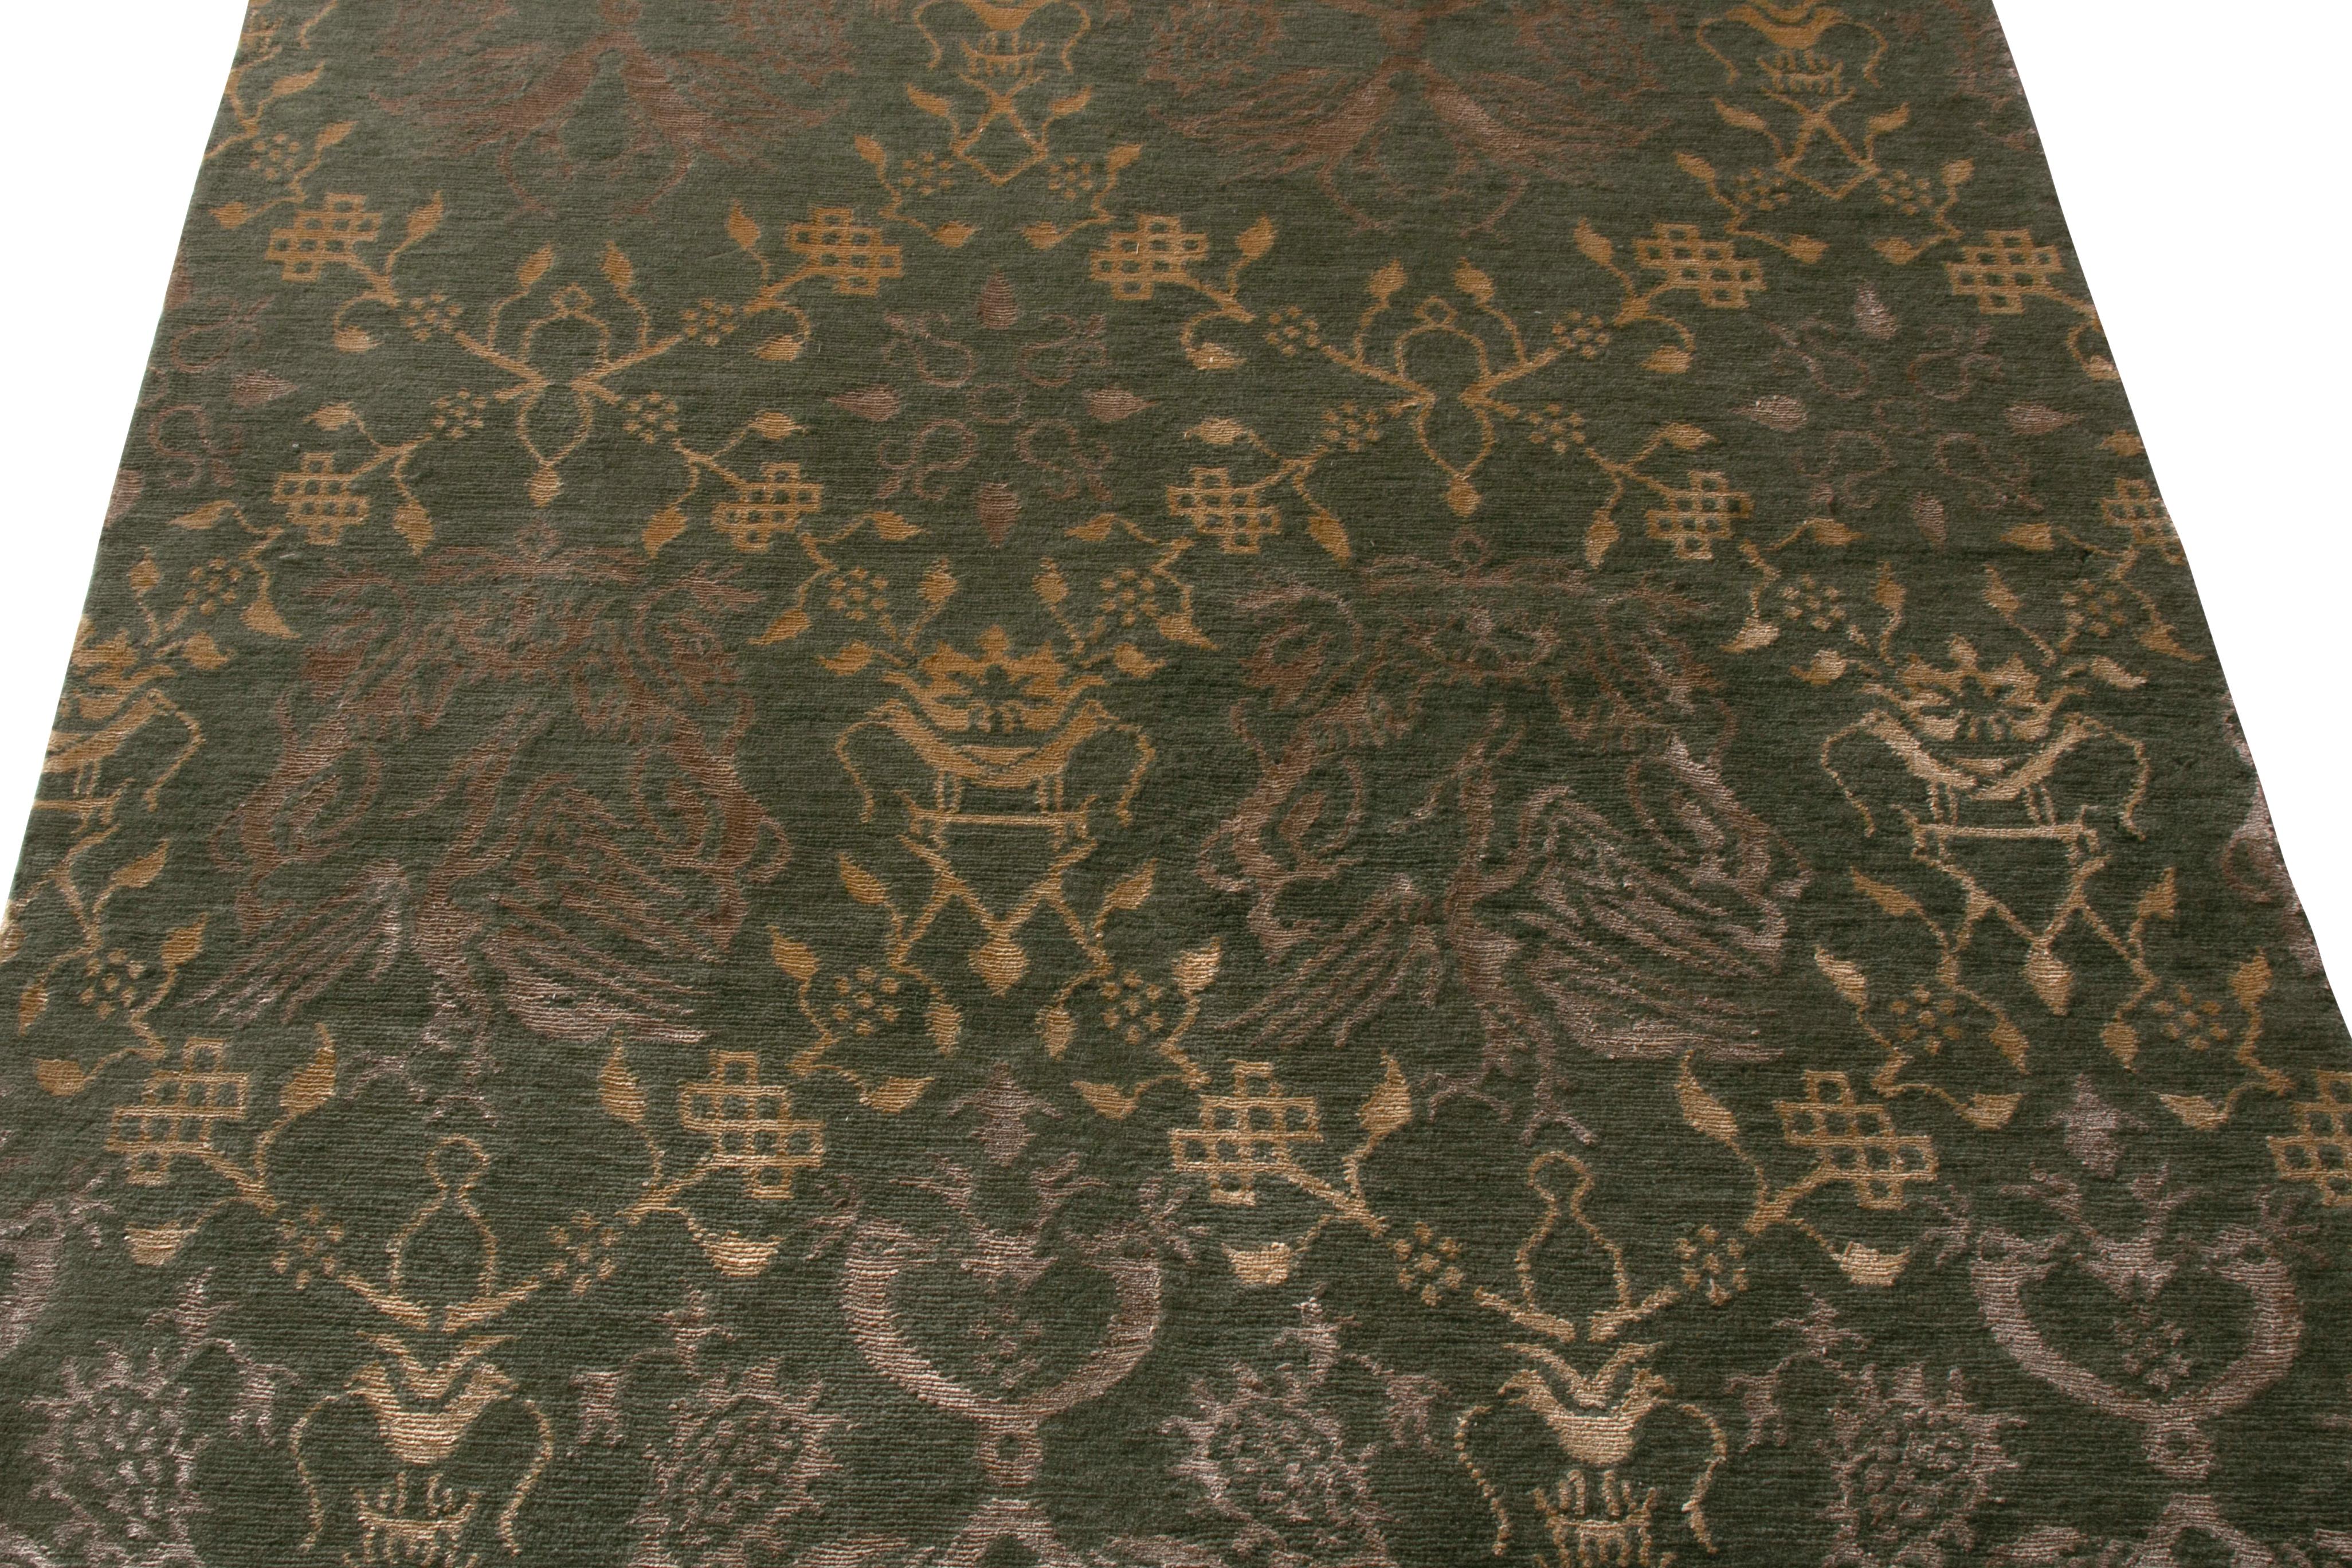 Dieser 4 x 6 große Teppich gehört zur europäischen Kollektion von Rug & Kilim und ist inspiriert von einer westlichen Interpretation traditioneller Drachen- und Phönixmotive, die sich in den goldenen Spaliermustern abwechseln. Handgeknüpft aus Wolle